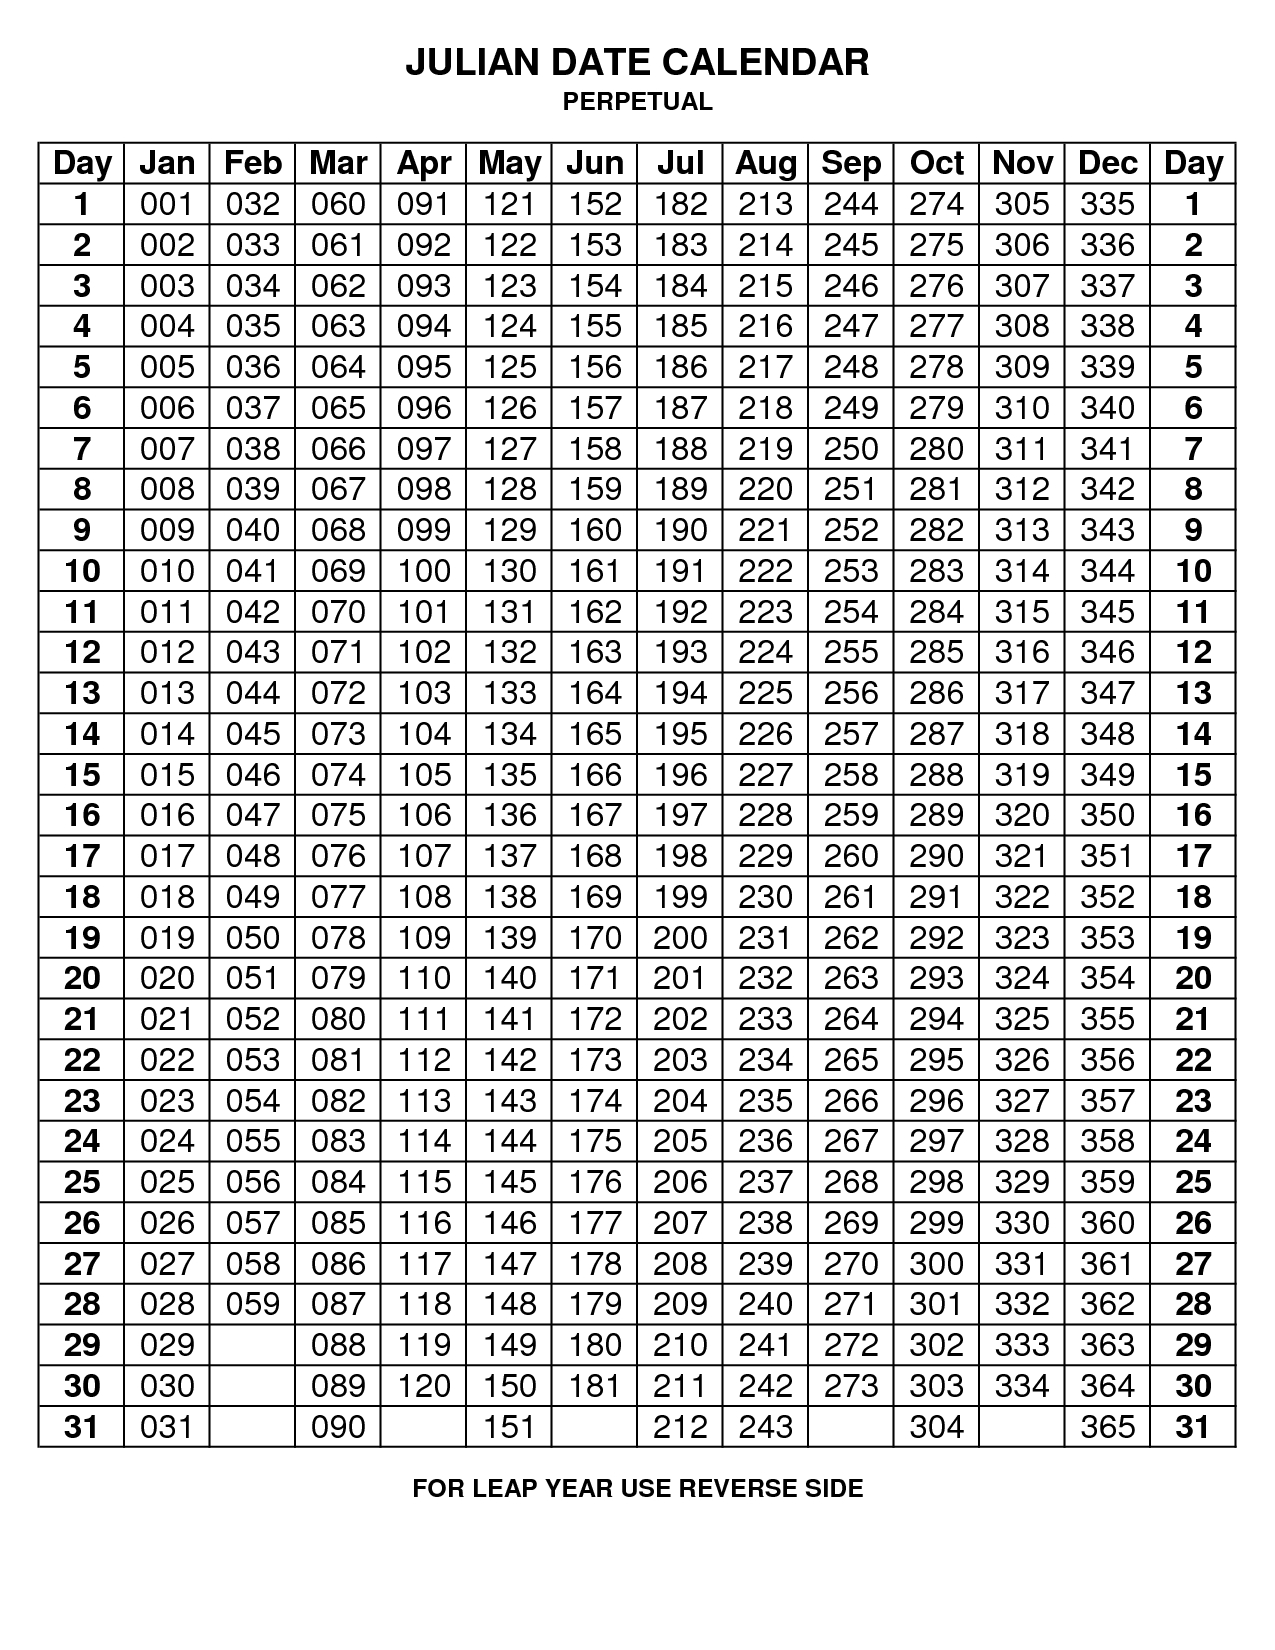 Julian Calendar Printable - Vapha.kaptanband.co  Government Julian Date 2020